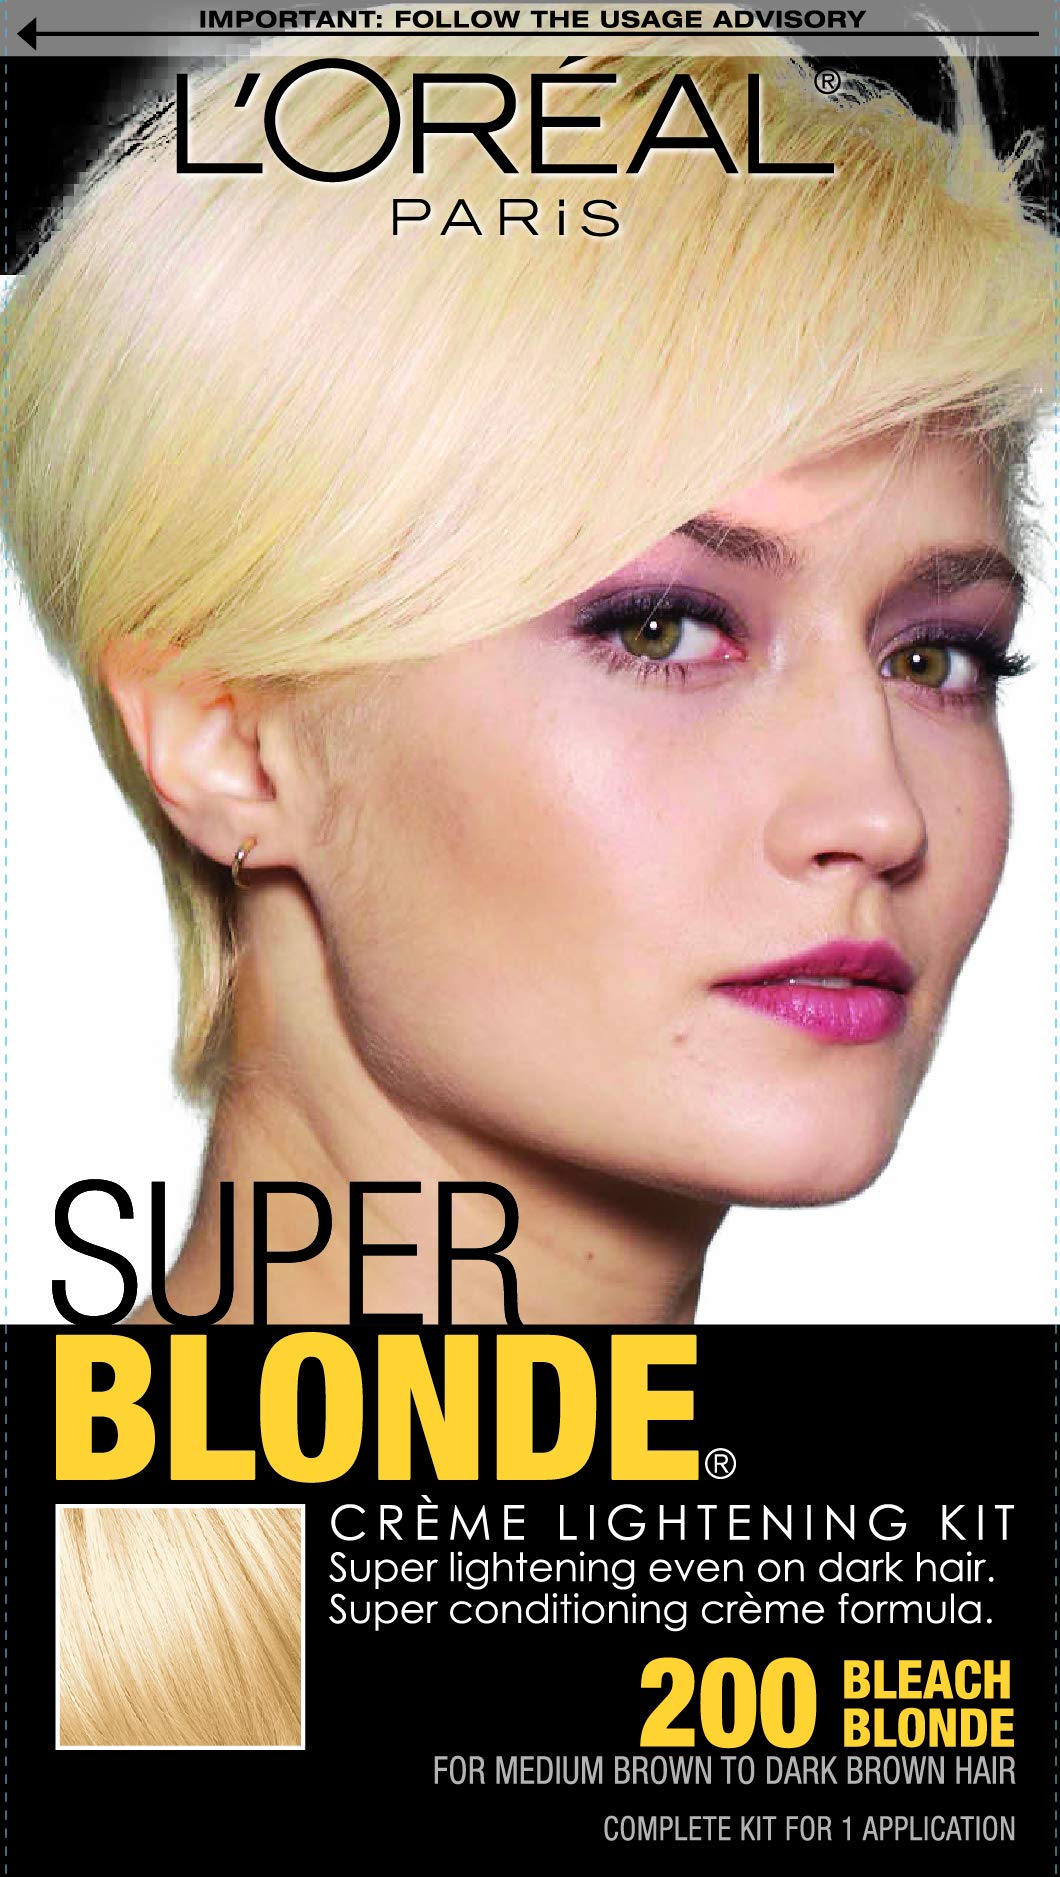 Loreal Paris Super Blonde Creme Lightening Kit 200 Bleach Blonde